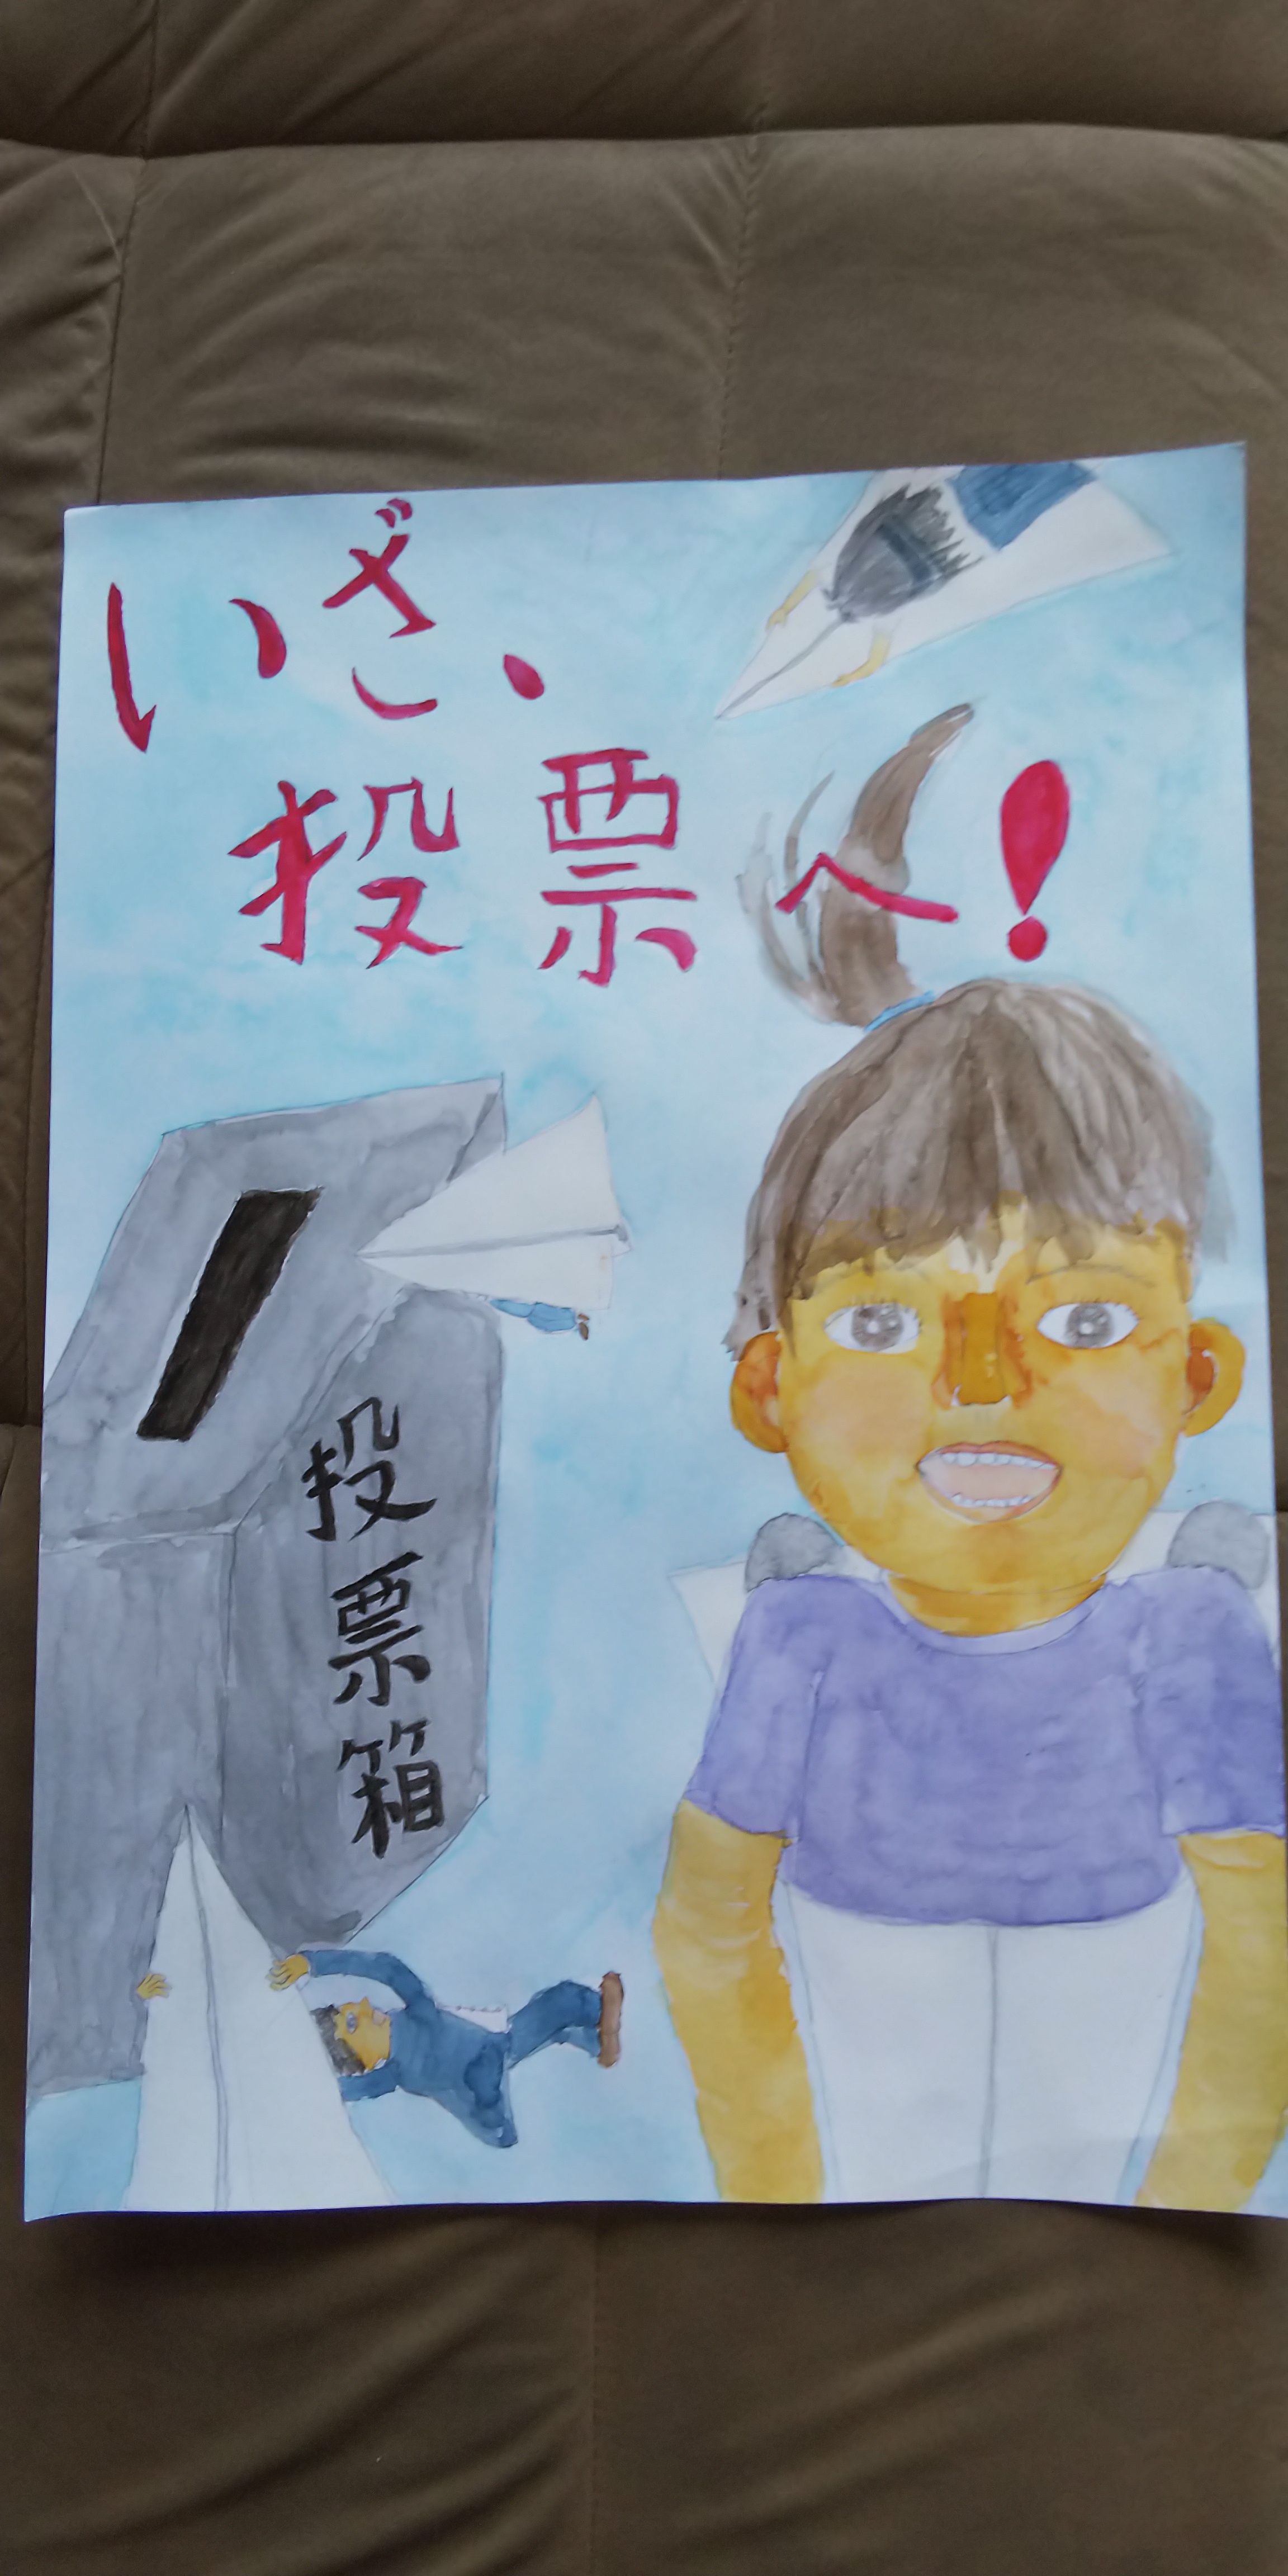 先生 夏休みの宿題で描いた選挙のポスターが入賞しました 苦手な絵が好きになる キッズ絵画アート教室 楽天ブログ